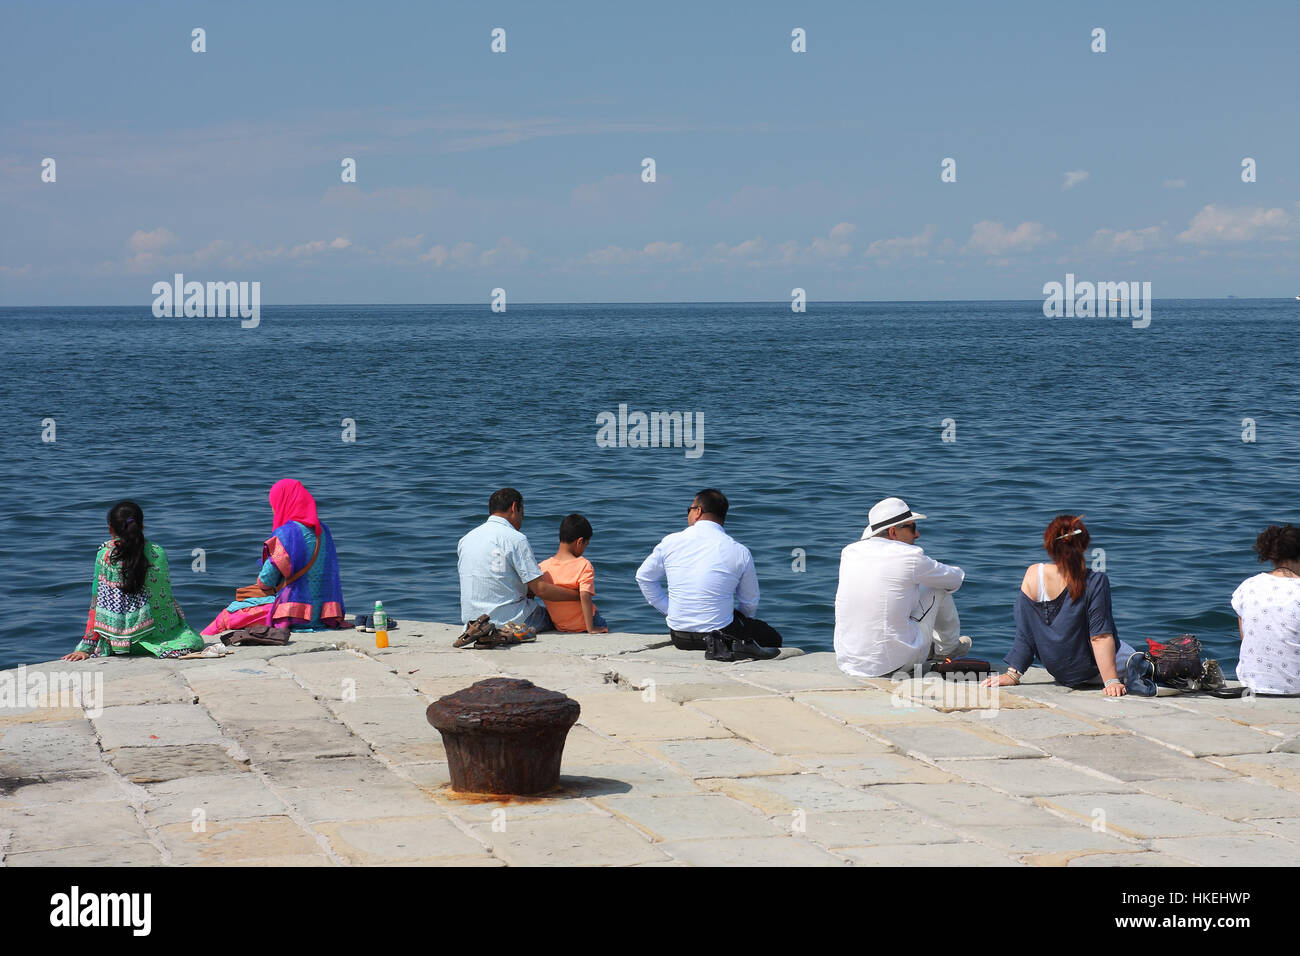 TRIESTE, ITALIA - 18 agosto 2015: un gruppo di turisti in sedi sul Molo Audace il 18 agosto 2015 a Trieste sull'Italia. Trieste è una popolare località turistica in Foto Stock